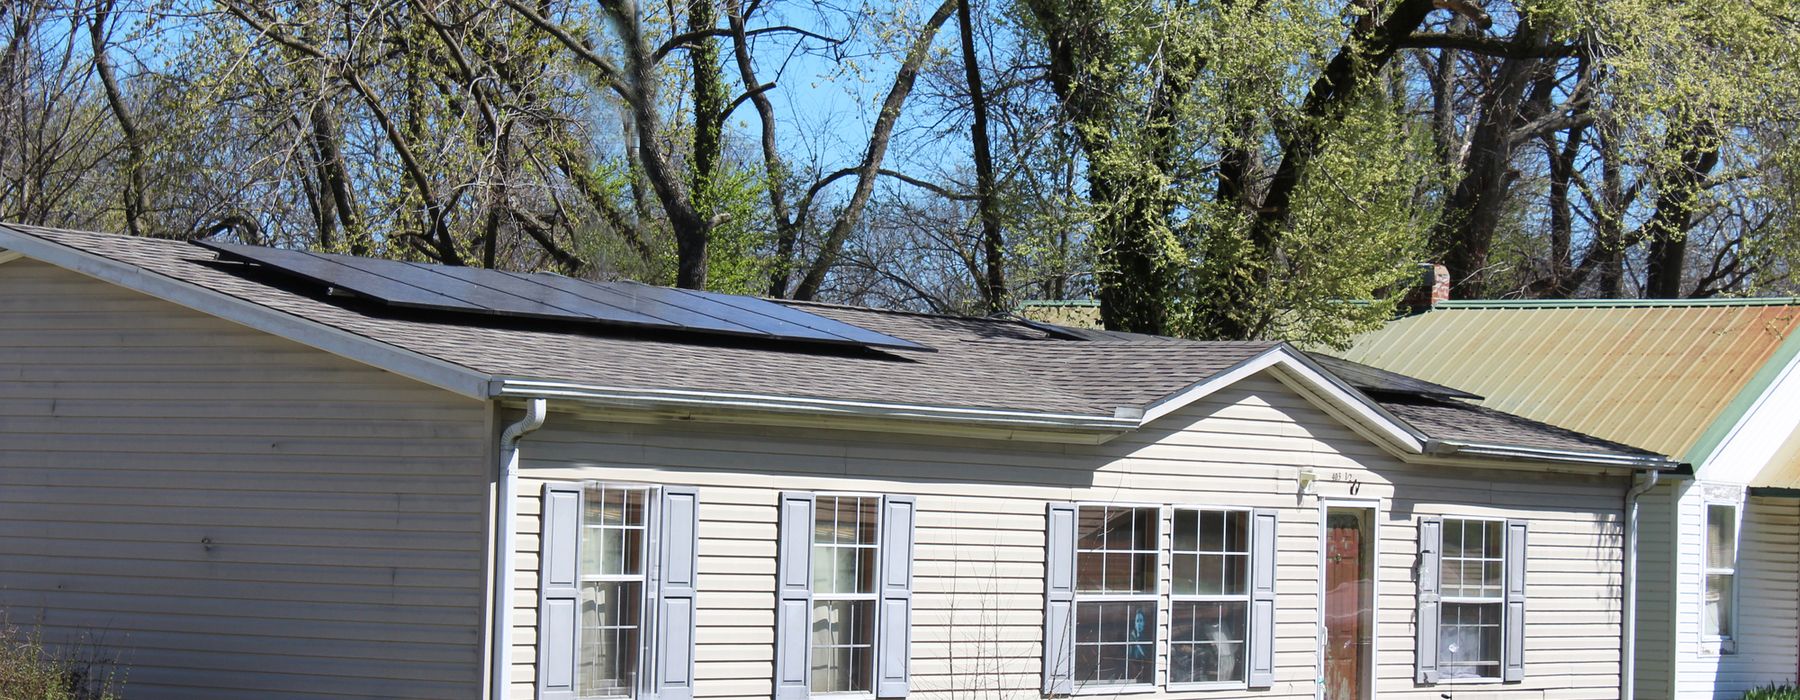 Casa de un piso, color blanquecino, con dos paneles solares separados en el techo.